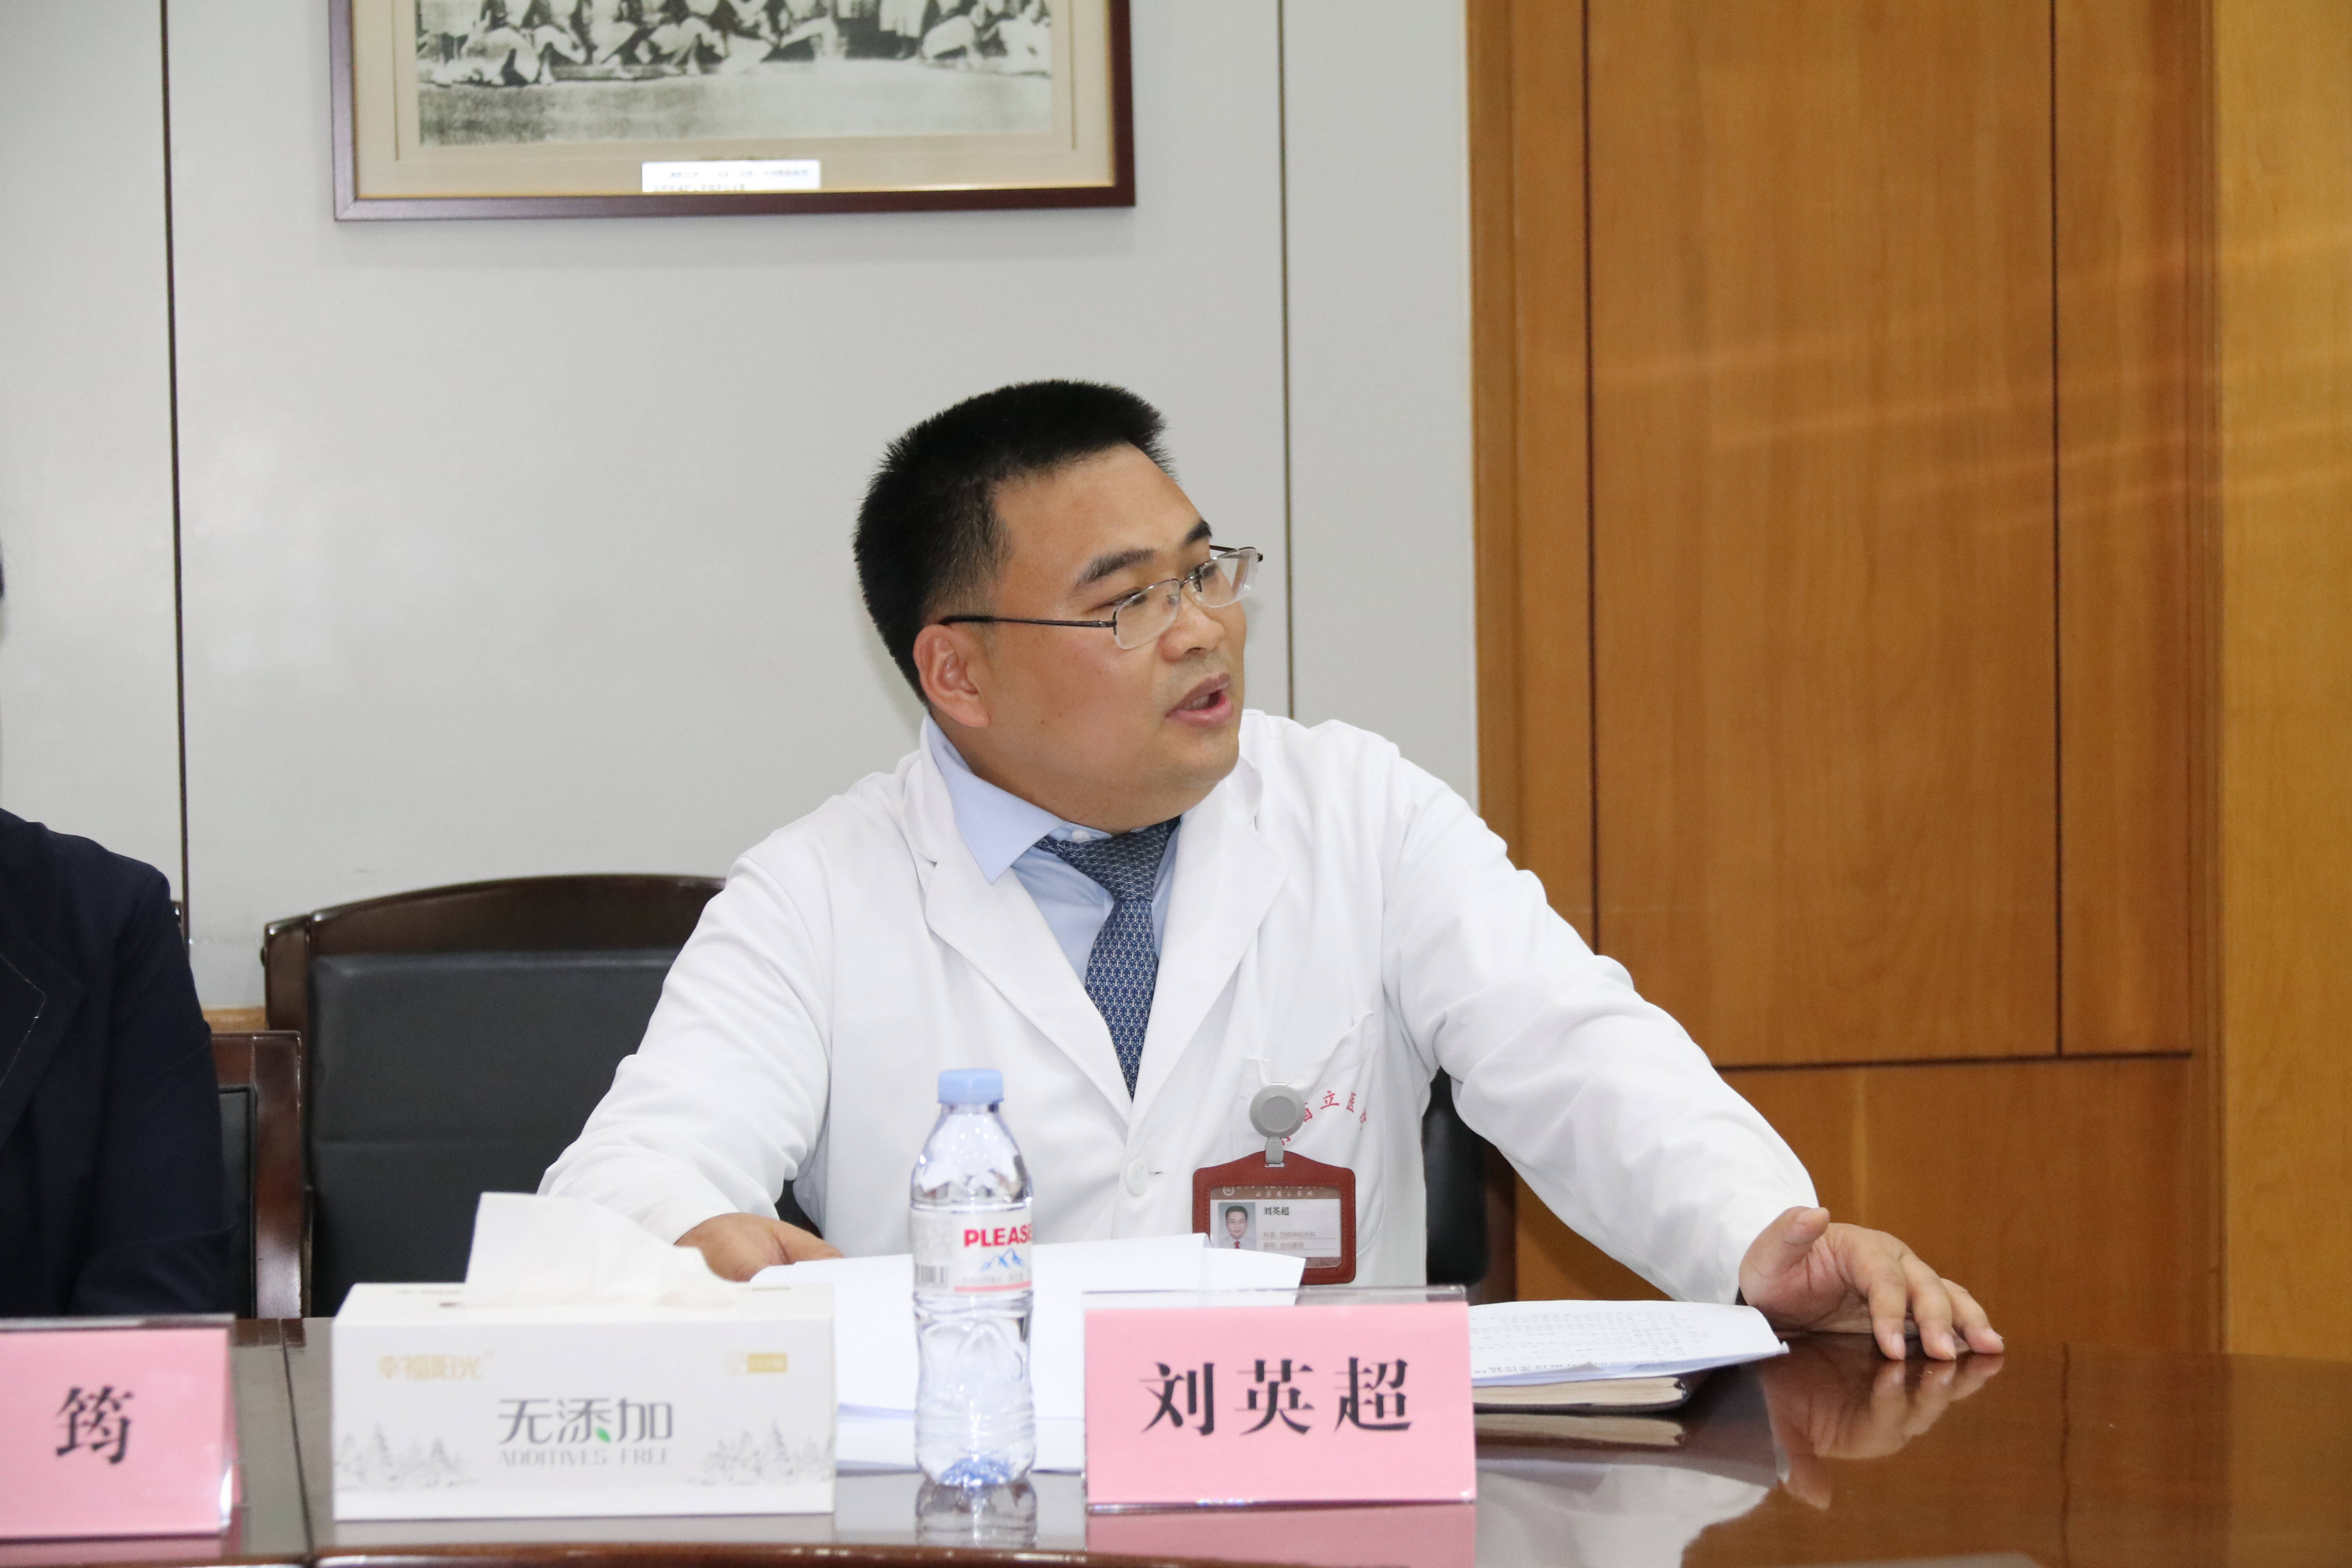 神经外科主任医师刘英超介绍中-塞远程医疗国际人才培训项目